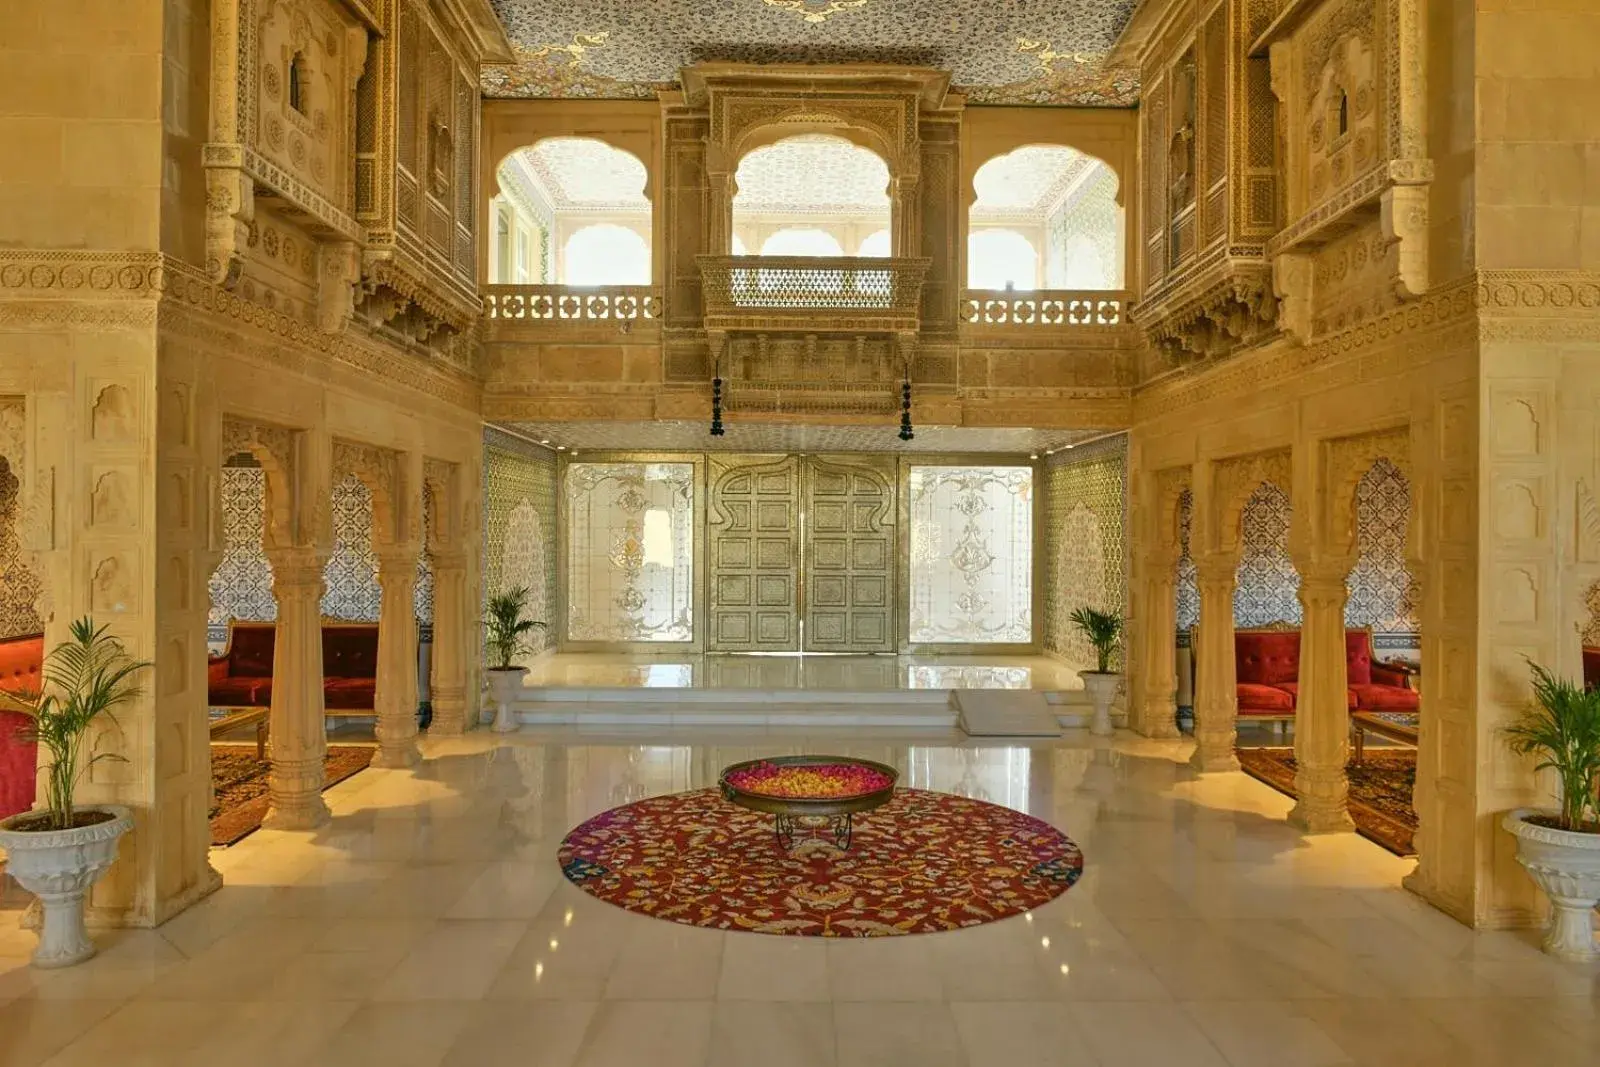 Lobby or reception, Lobby/Reception in Fort Rajwada